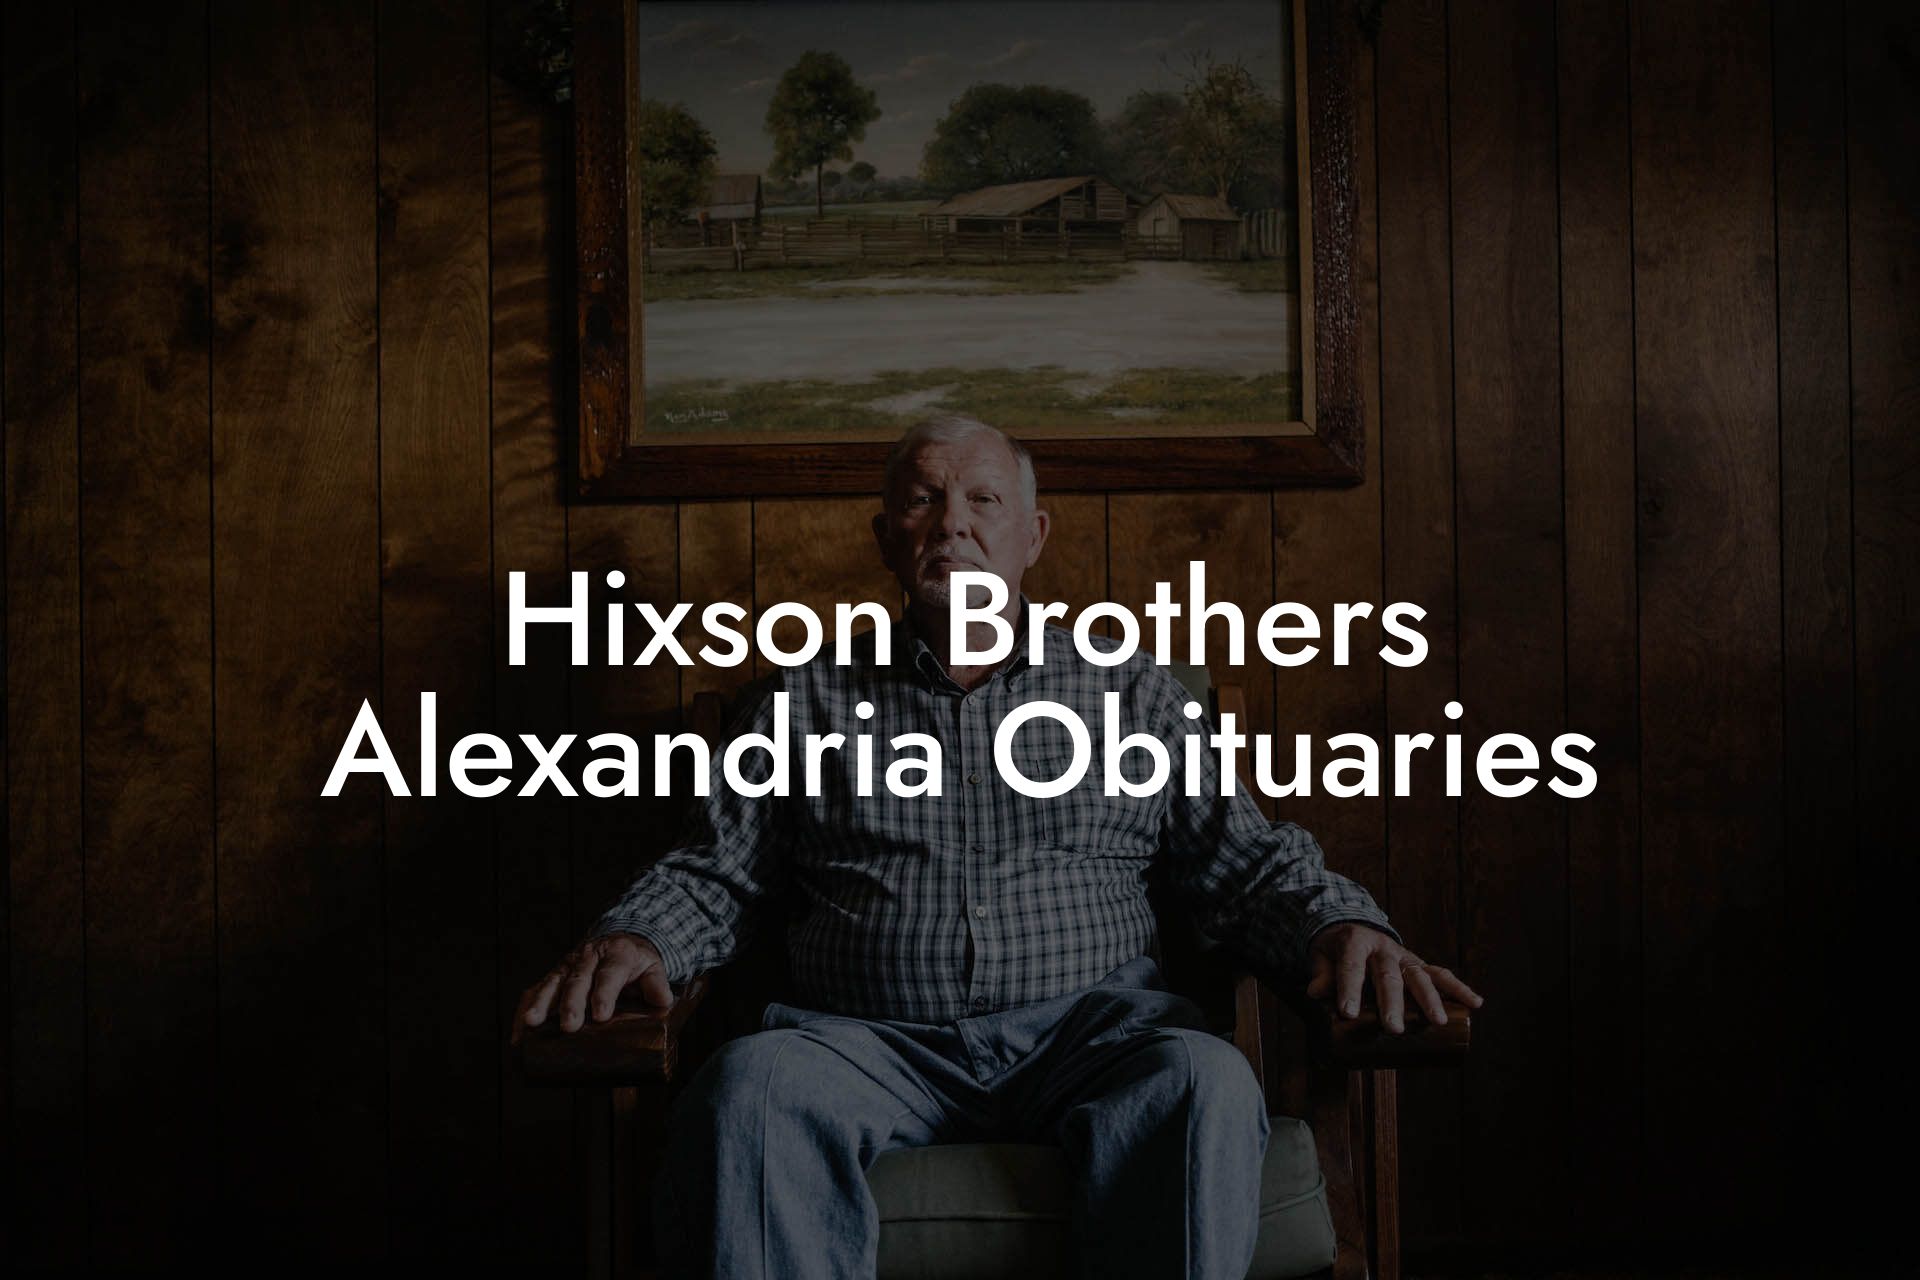 Hixson Brothers Alexandria Obituaries